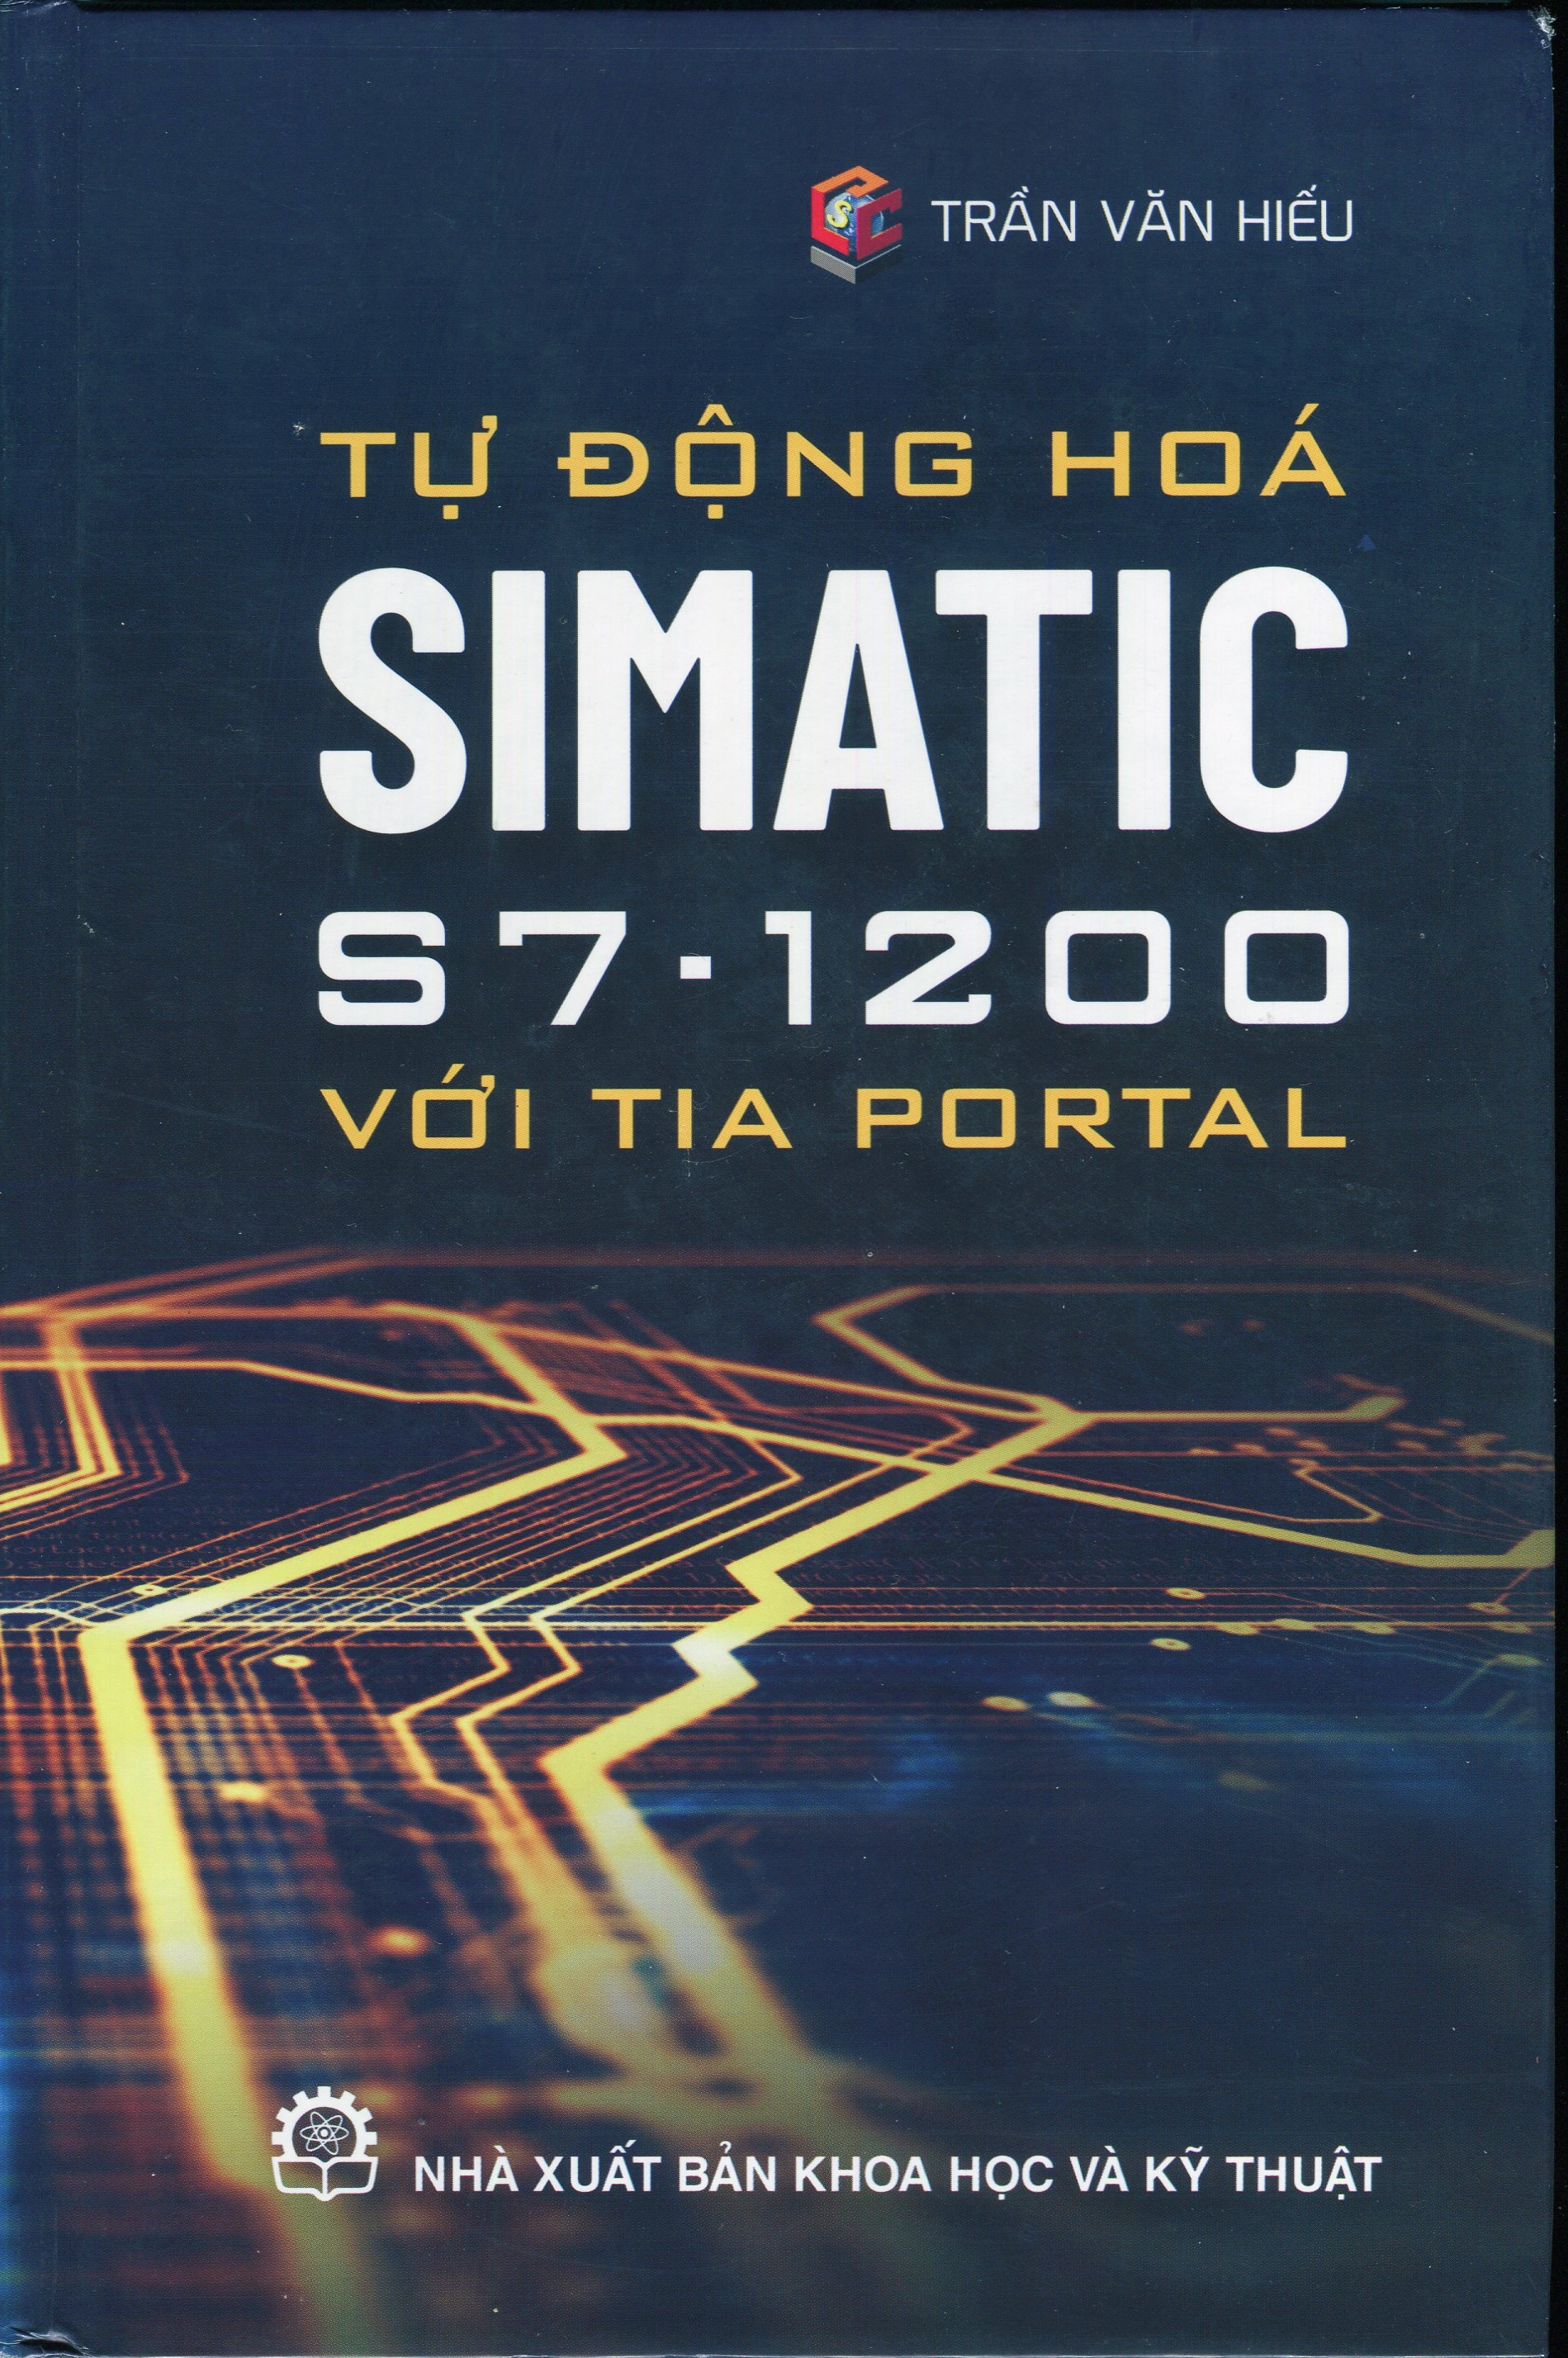 Tự Động Hóa SIMATIC S7 - 1200 Với Tia PORTAL